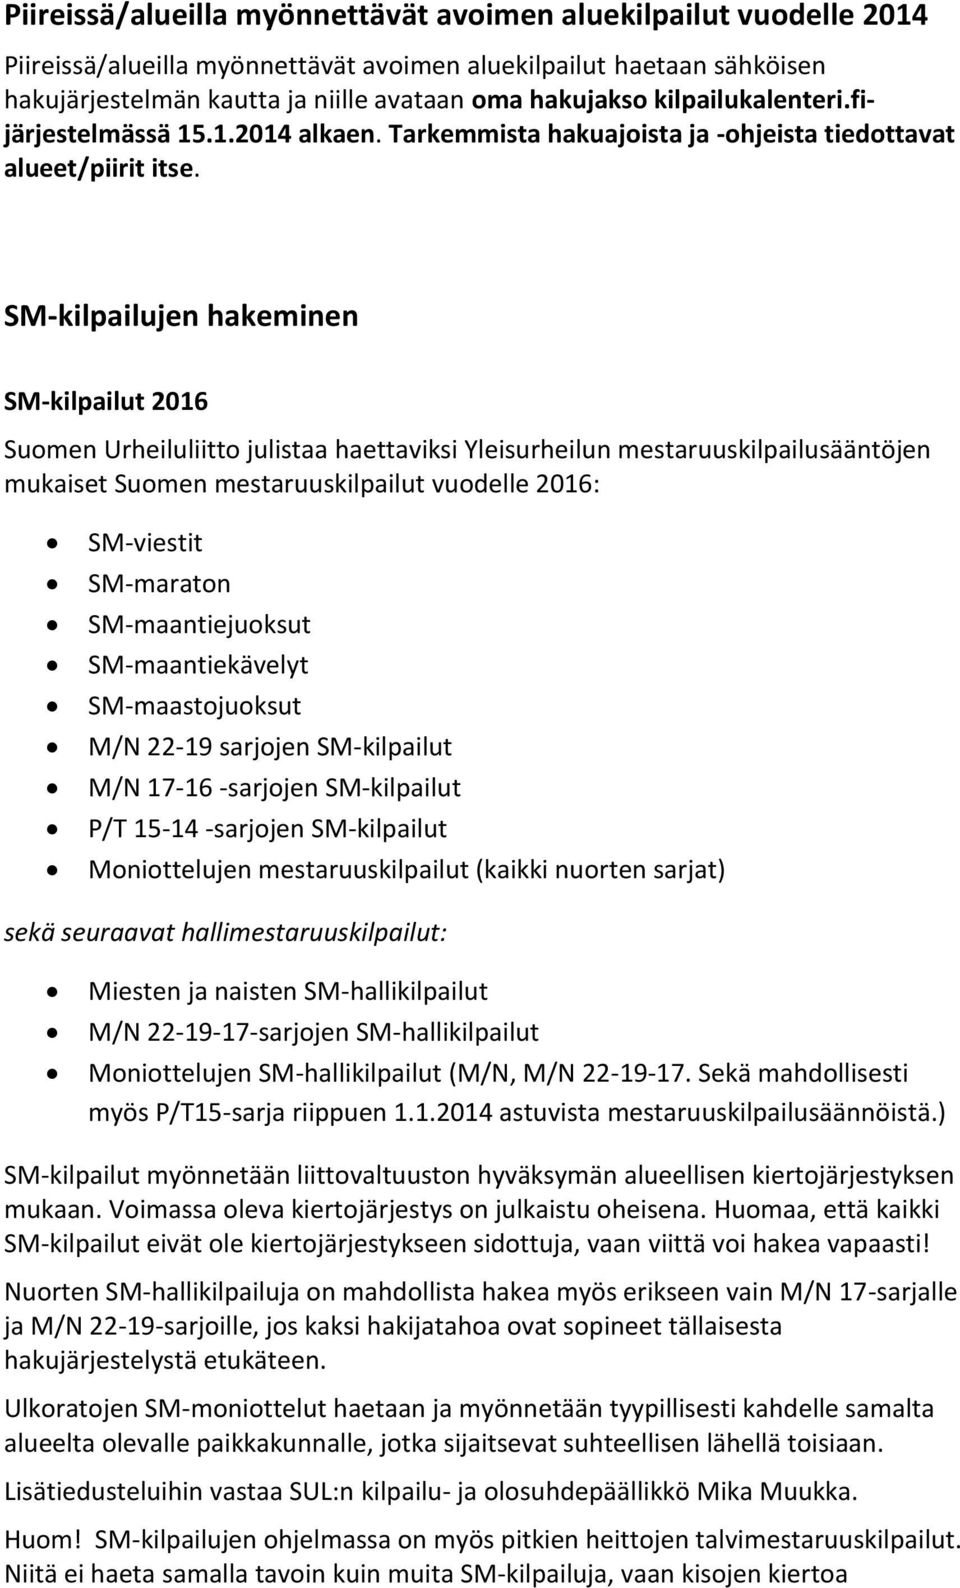 SM-kilpailujen hakeminen SM-kilpailut 2016 Suomen Urheiluliitto julistaa haettaviksi Yleisurheilun mestaruuskilpailusääntöjen mukaiset Suomen mestaruuskilpailut vuodelle 2016: SM-viestit SM-maraton